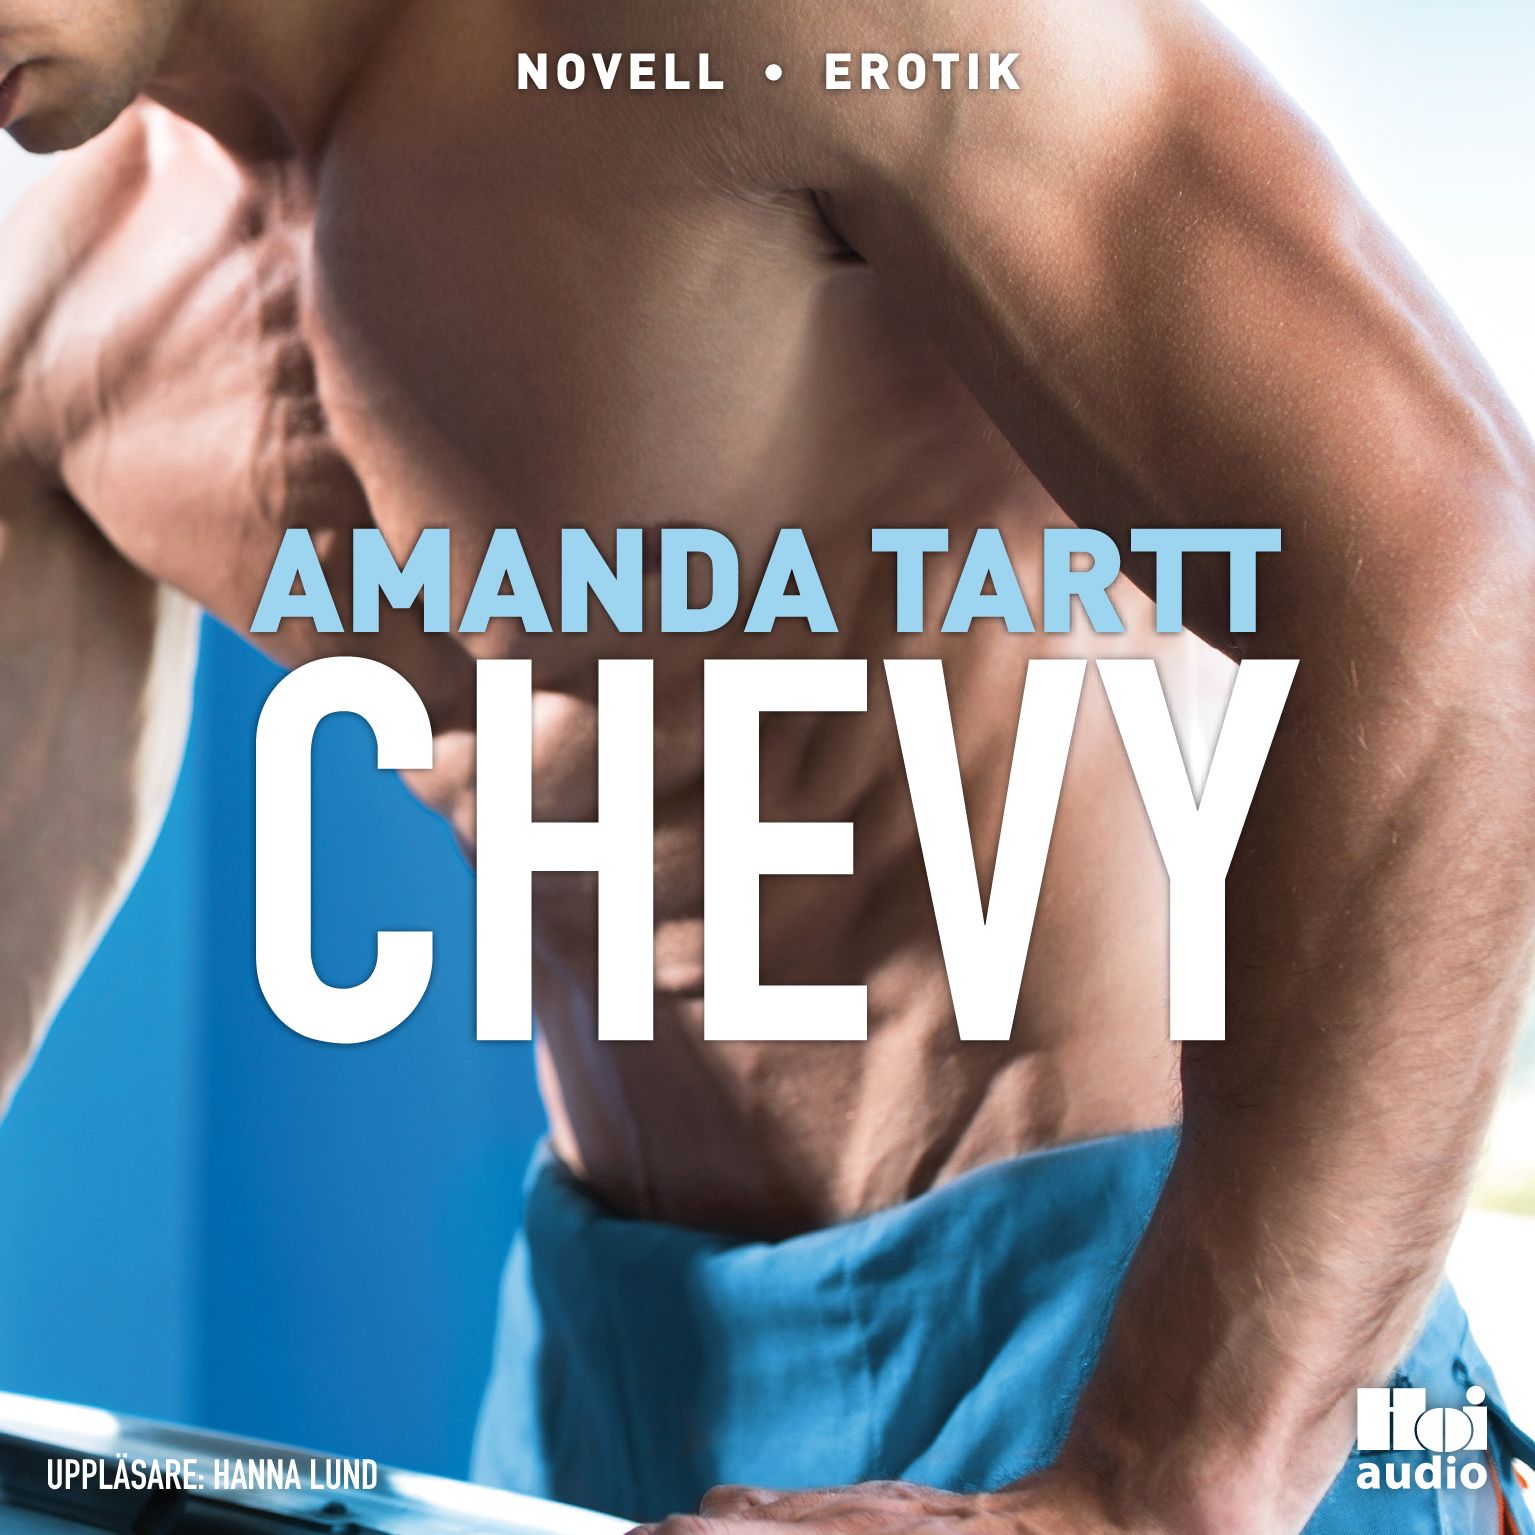 Chevy, audiobook by Amanda Tartt